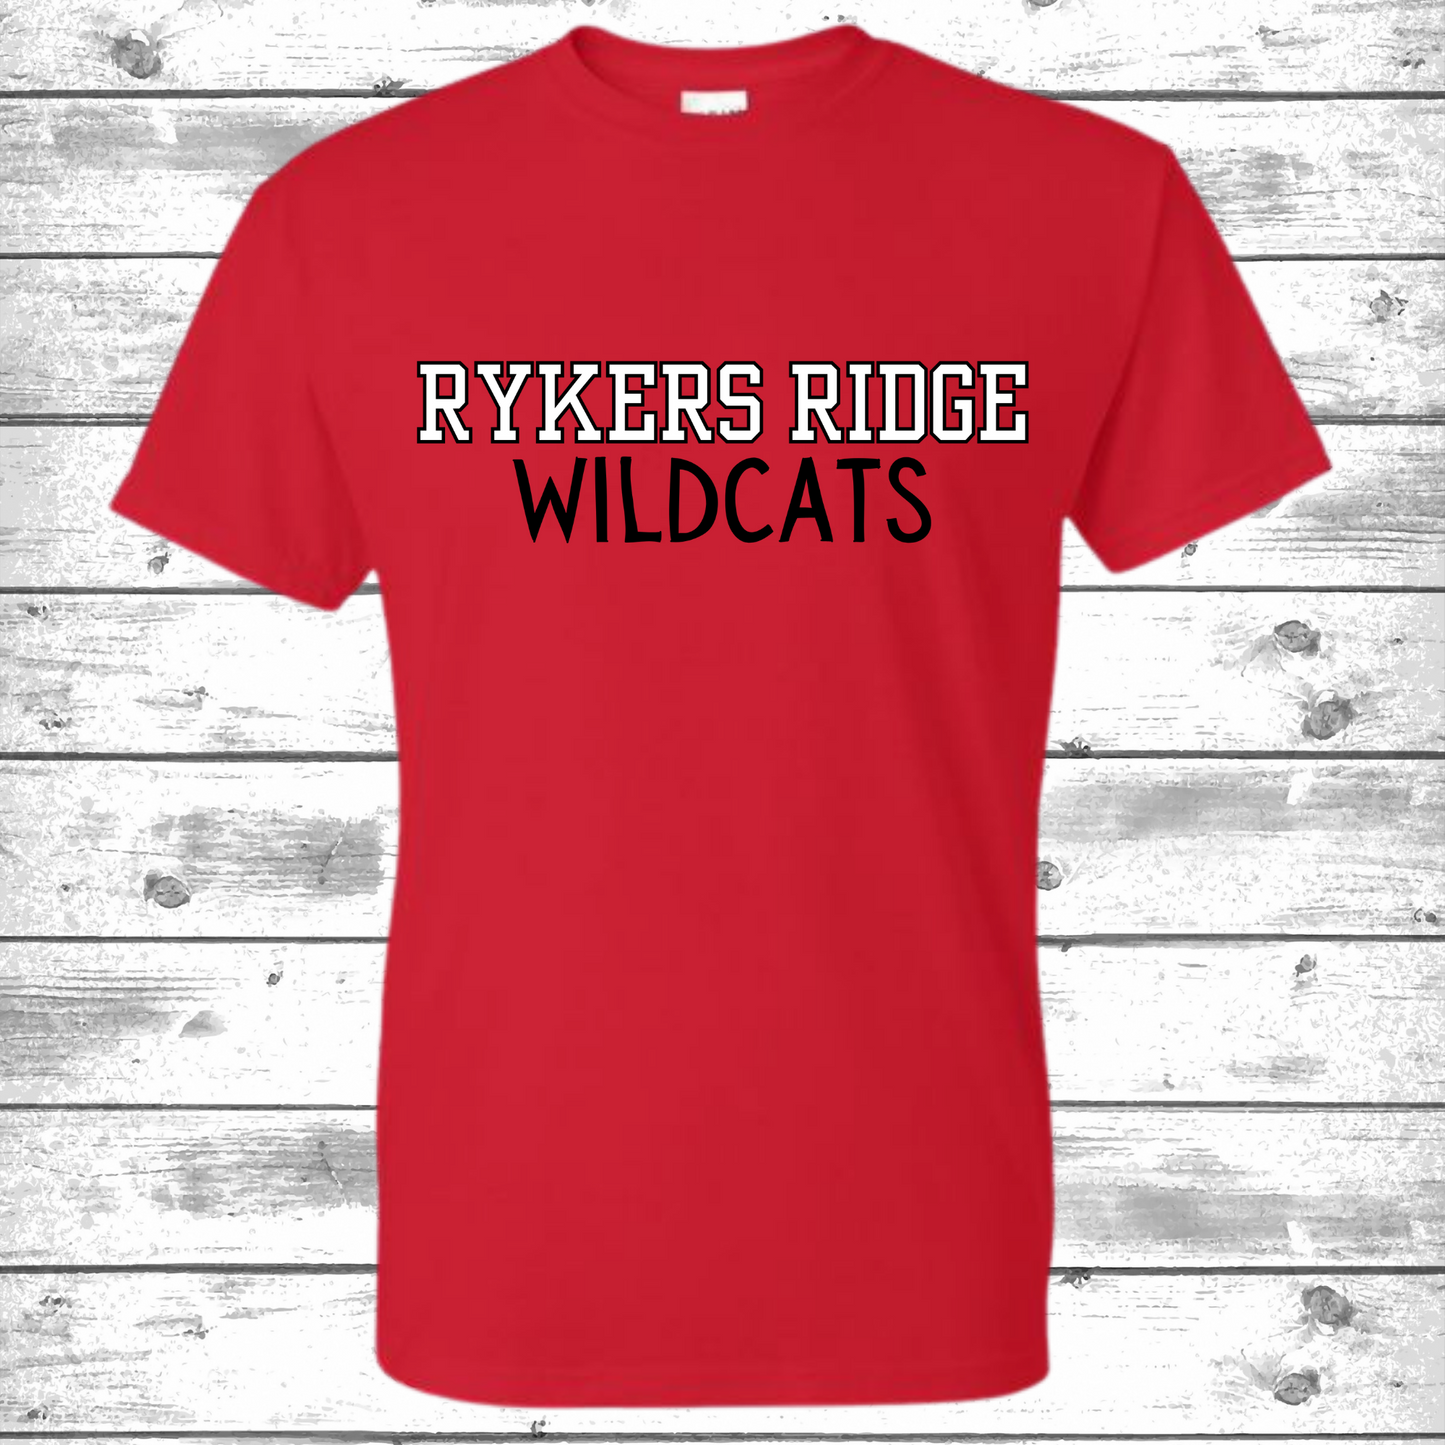 Rykers' Ridge Wildcats.2